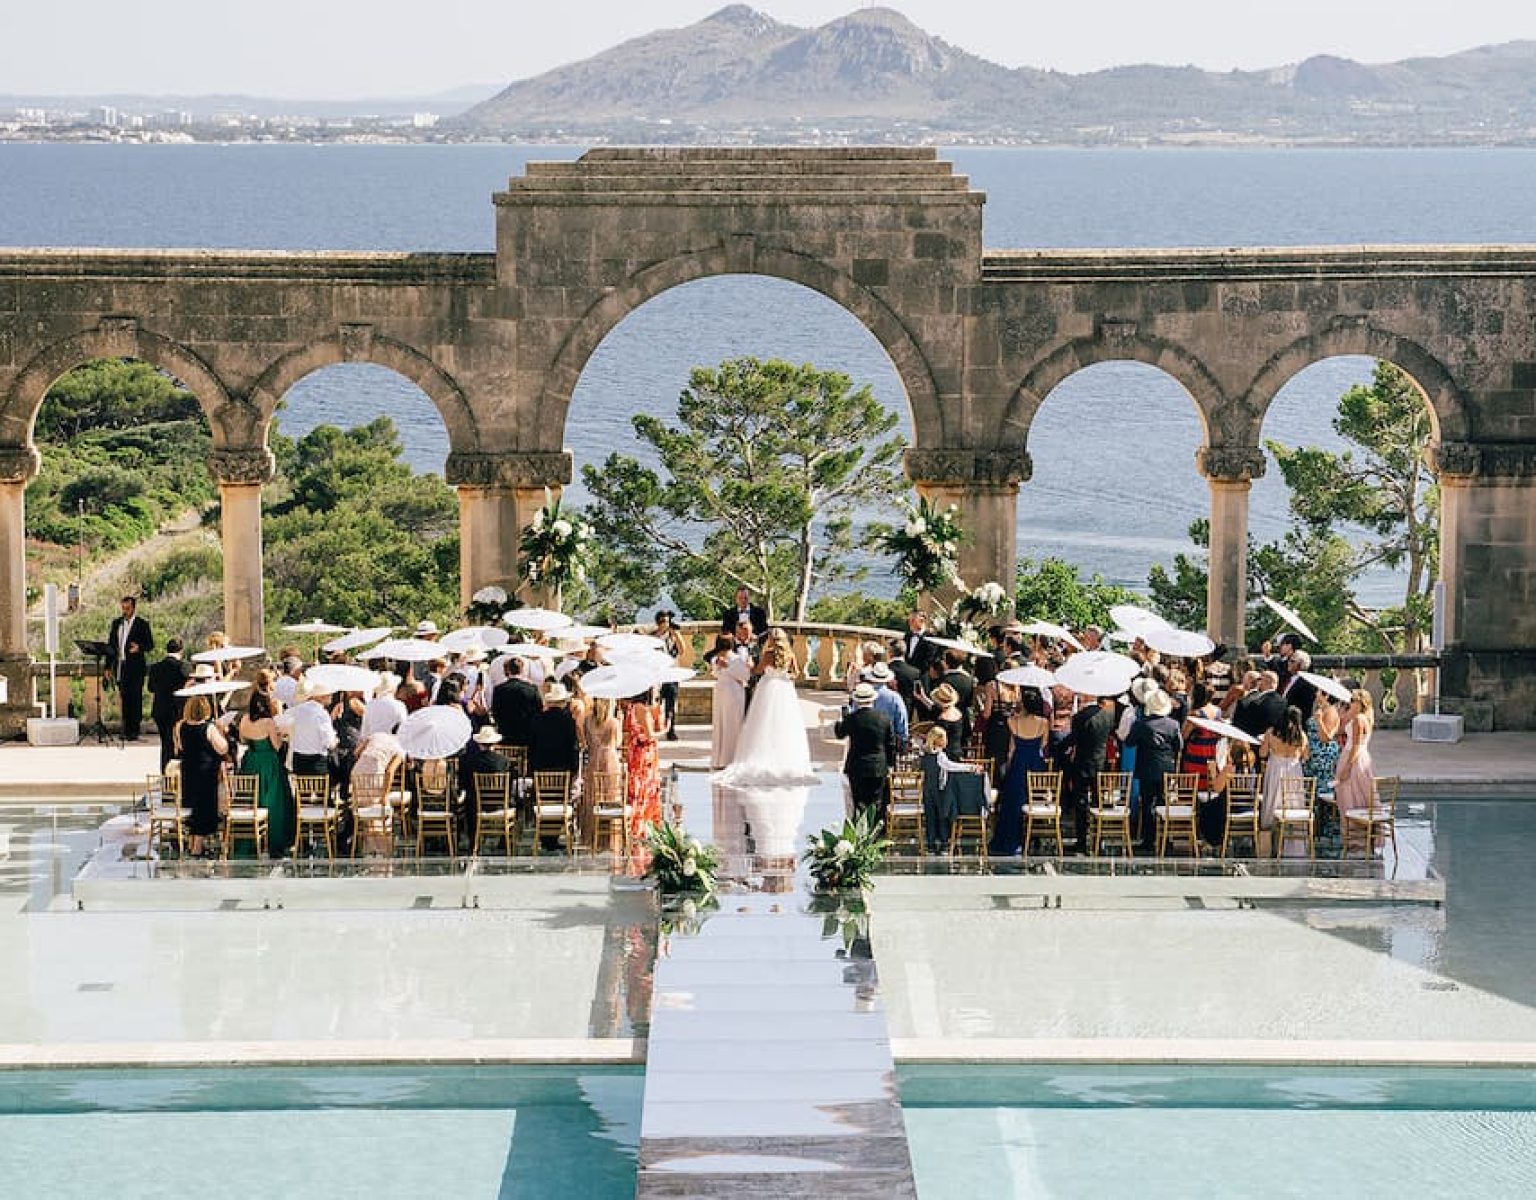 Gran lugar para bodas y eventos en Mallorca llamado La Fortaleza